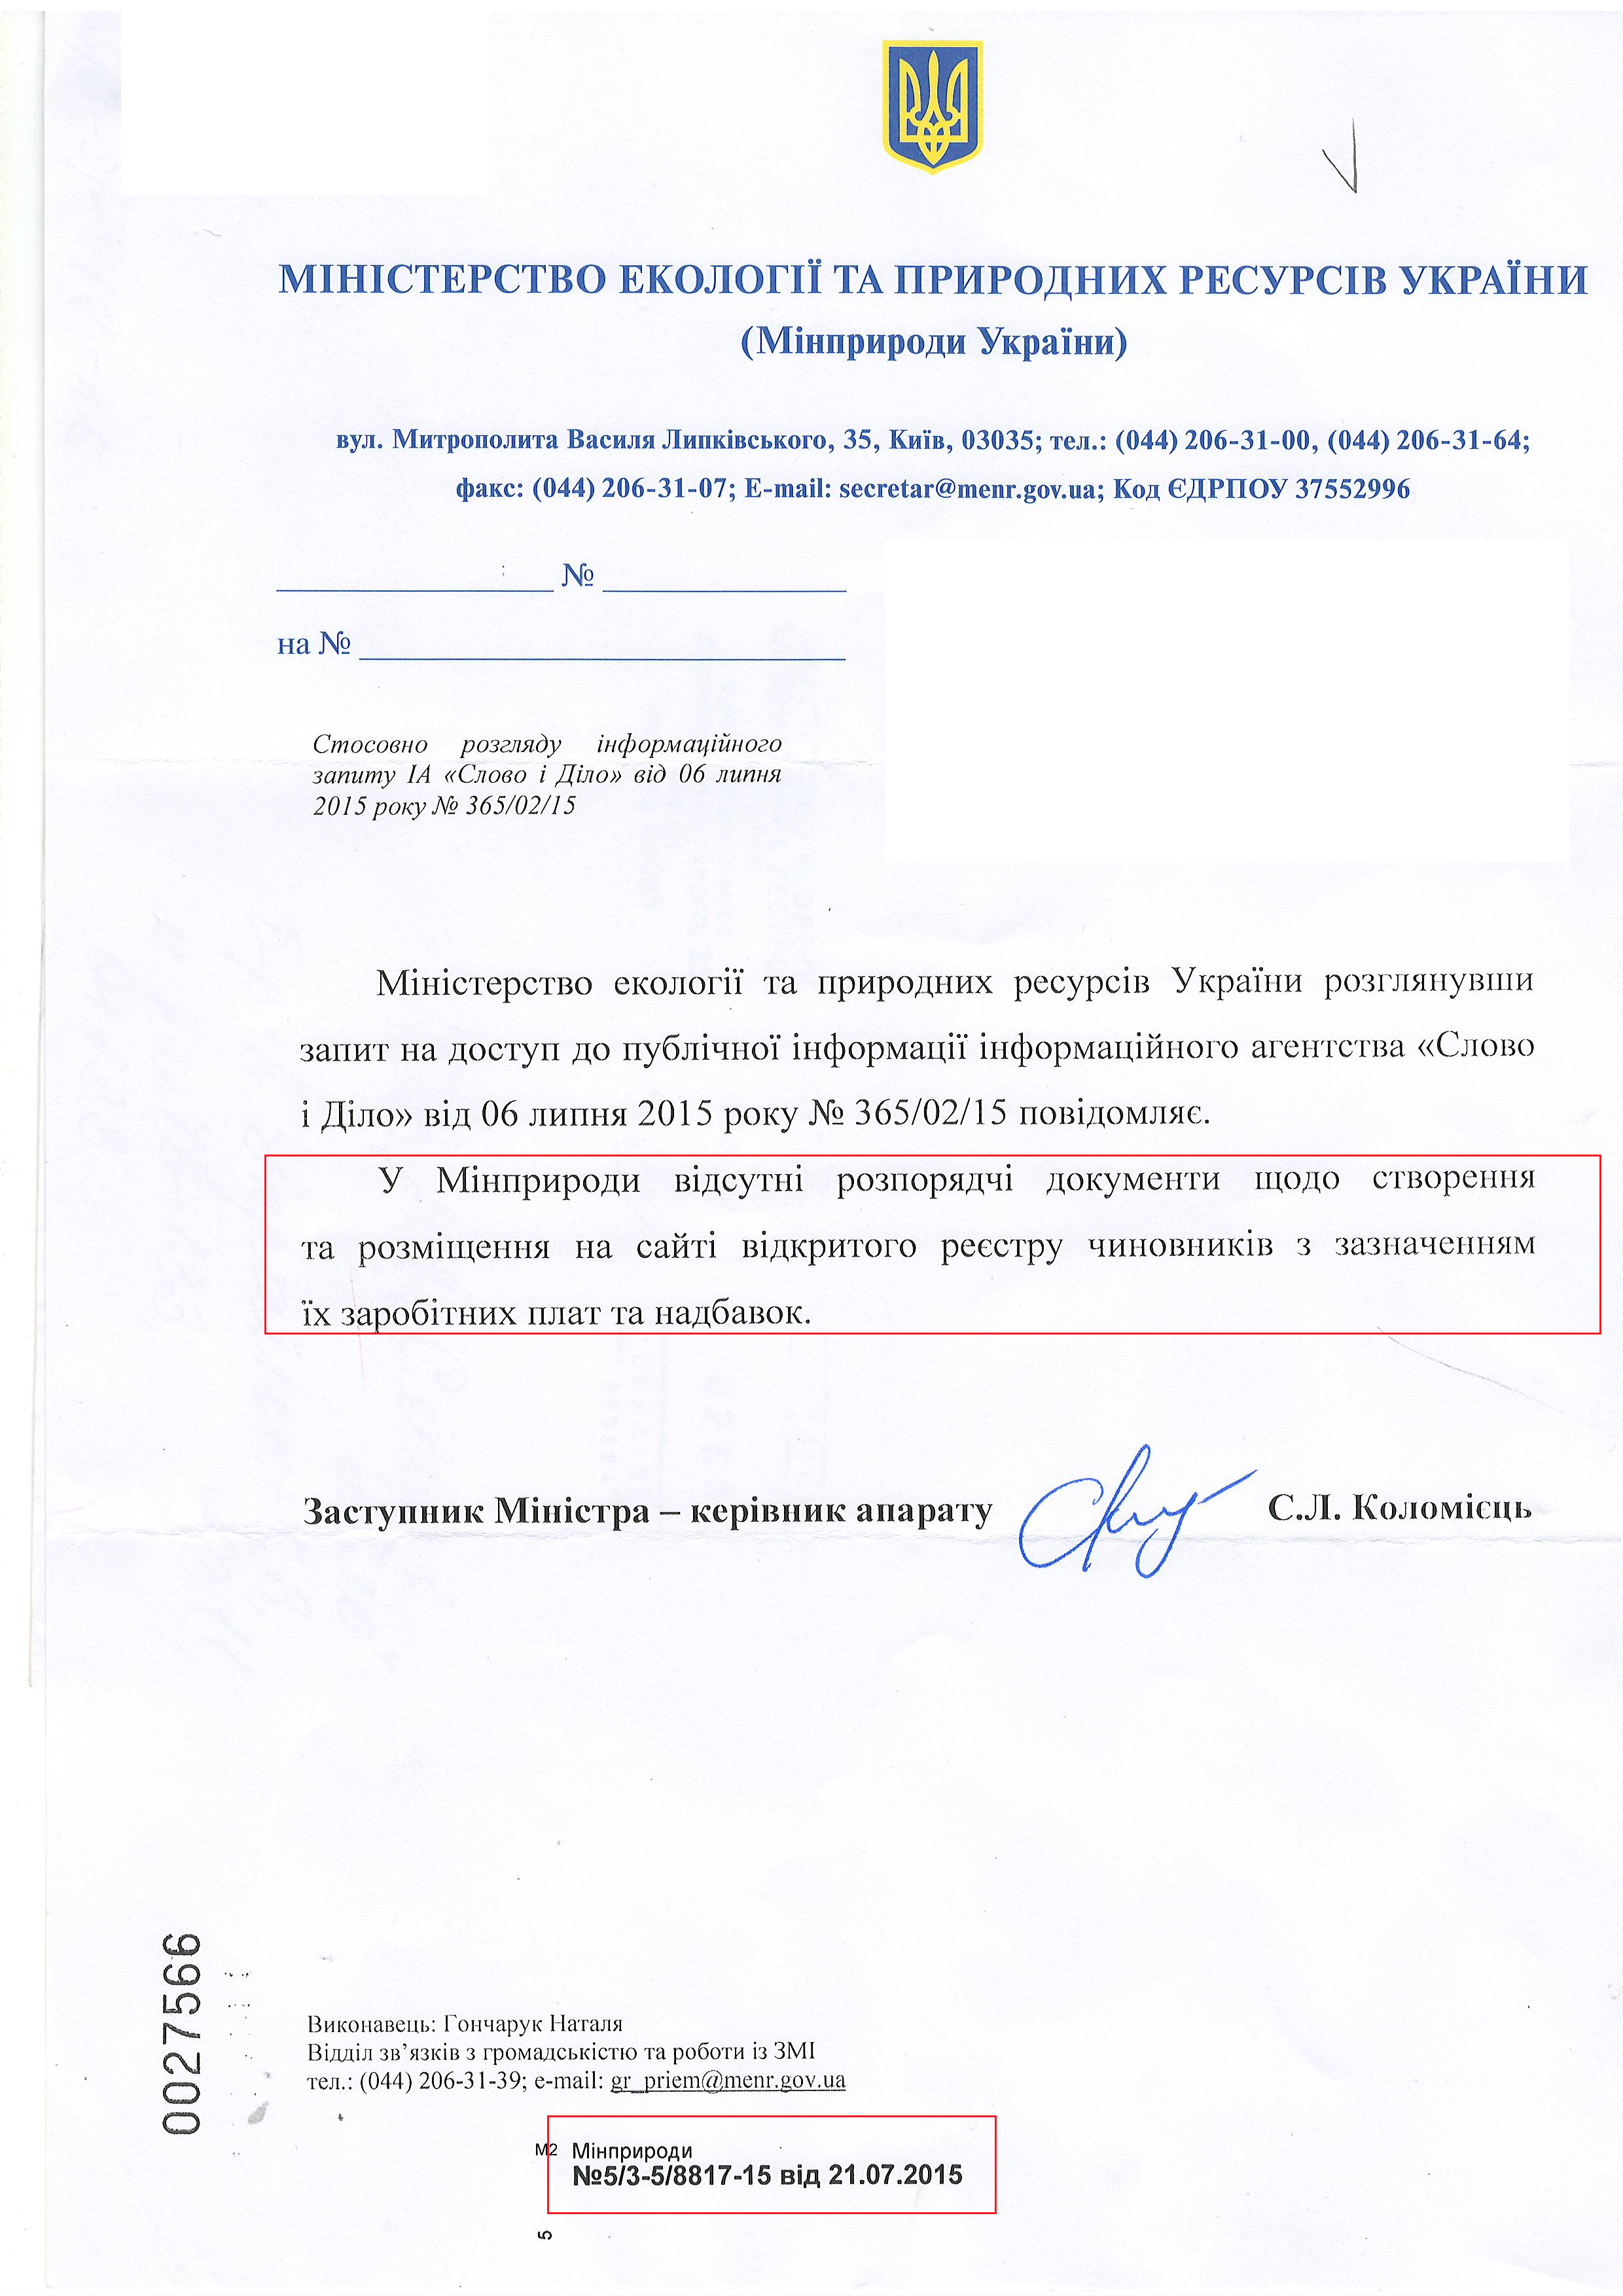 Лист Міністерства екології та природних ресурсів України від 21 липня 2015 року